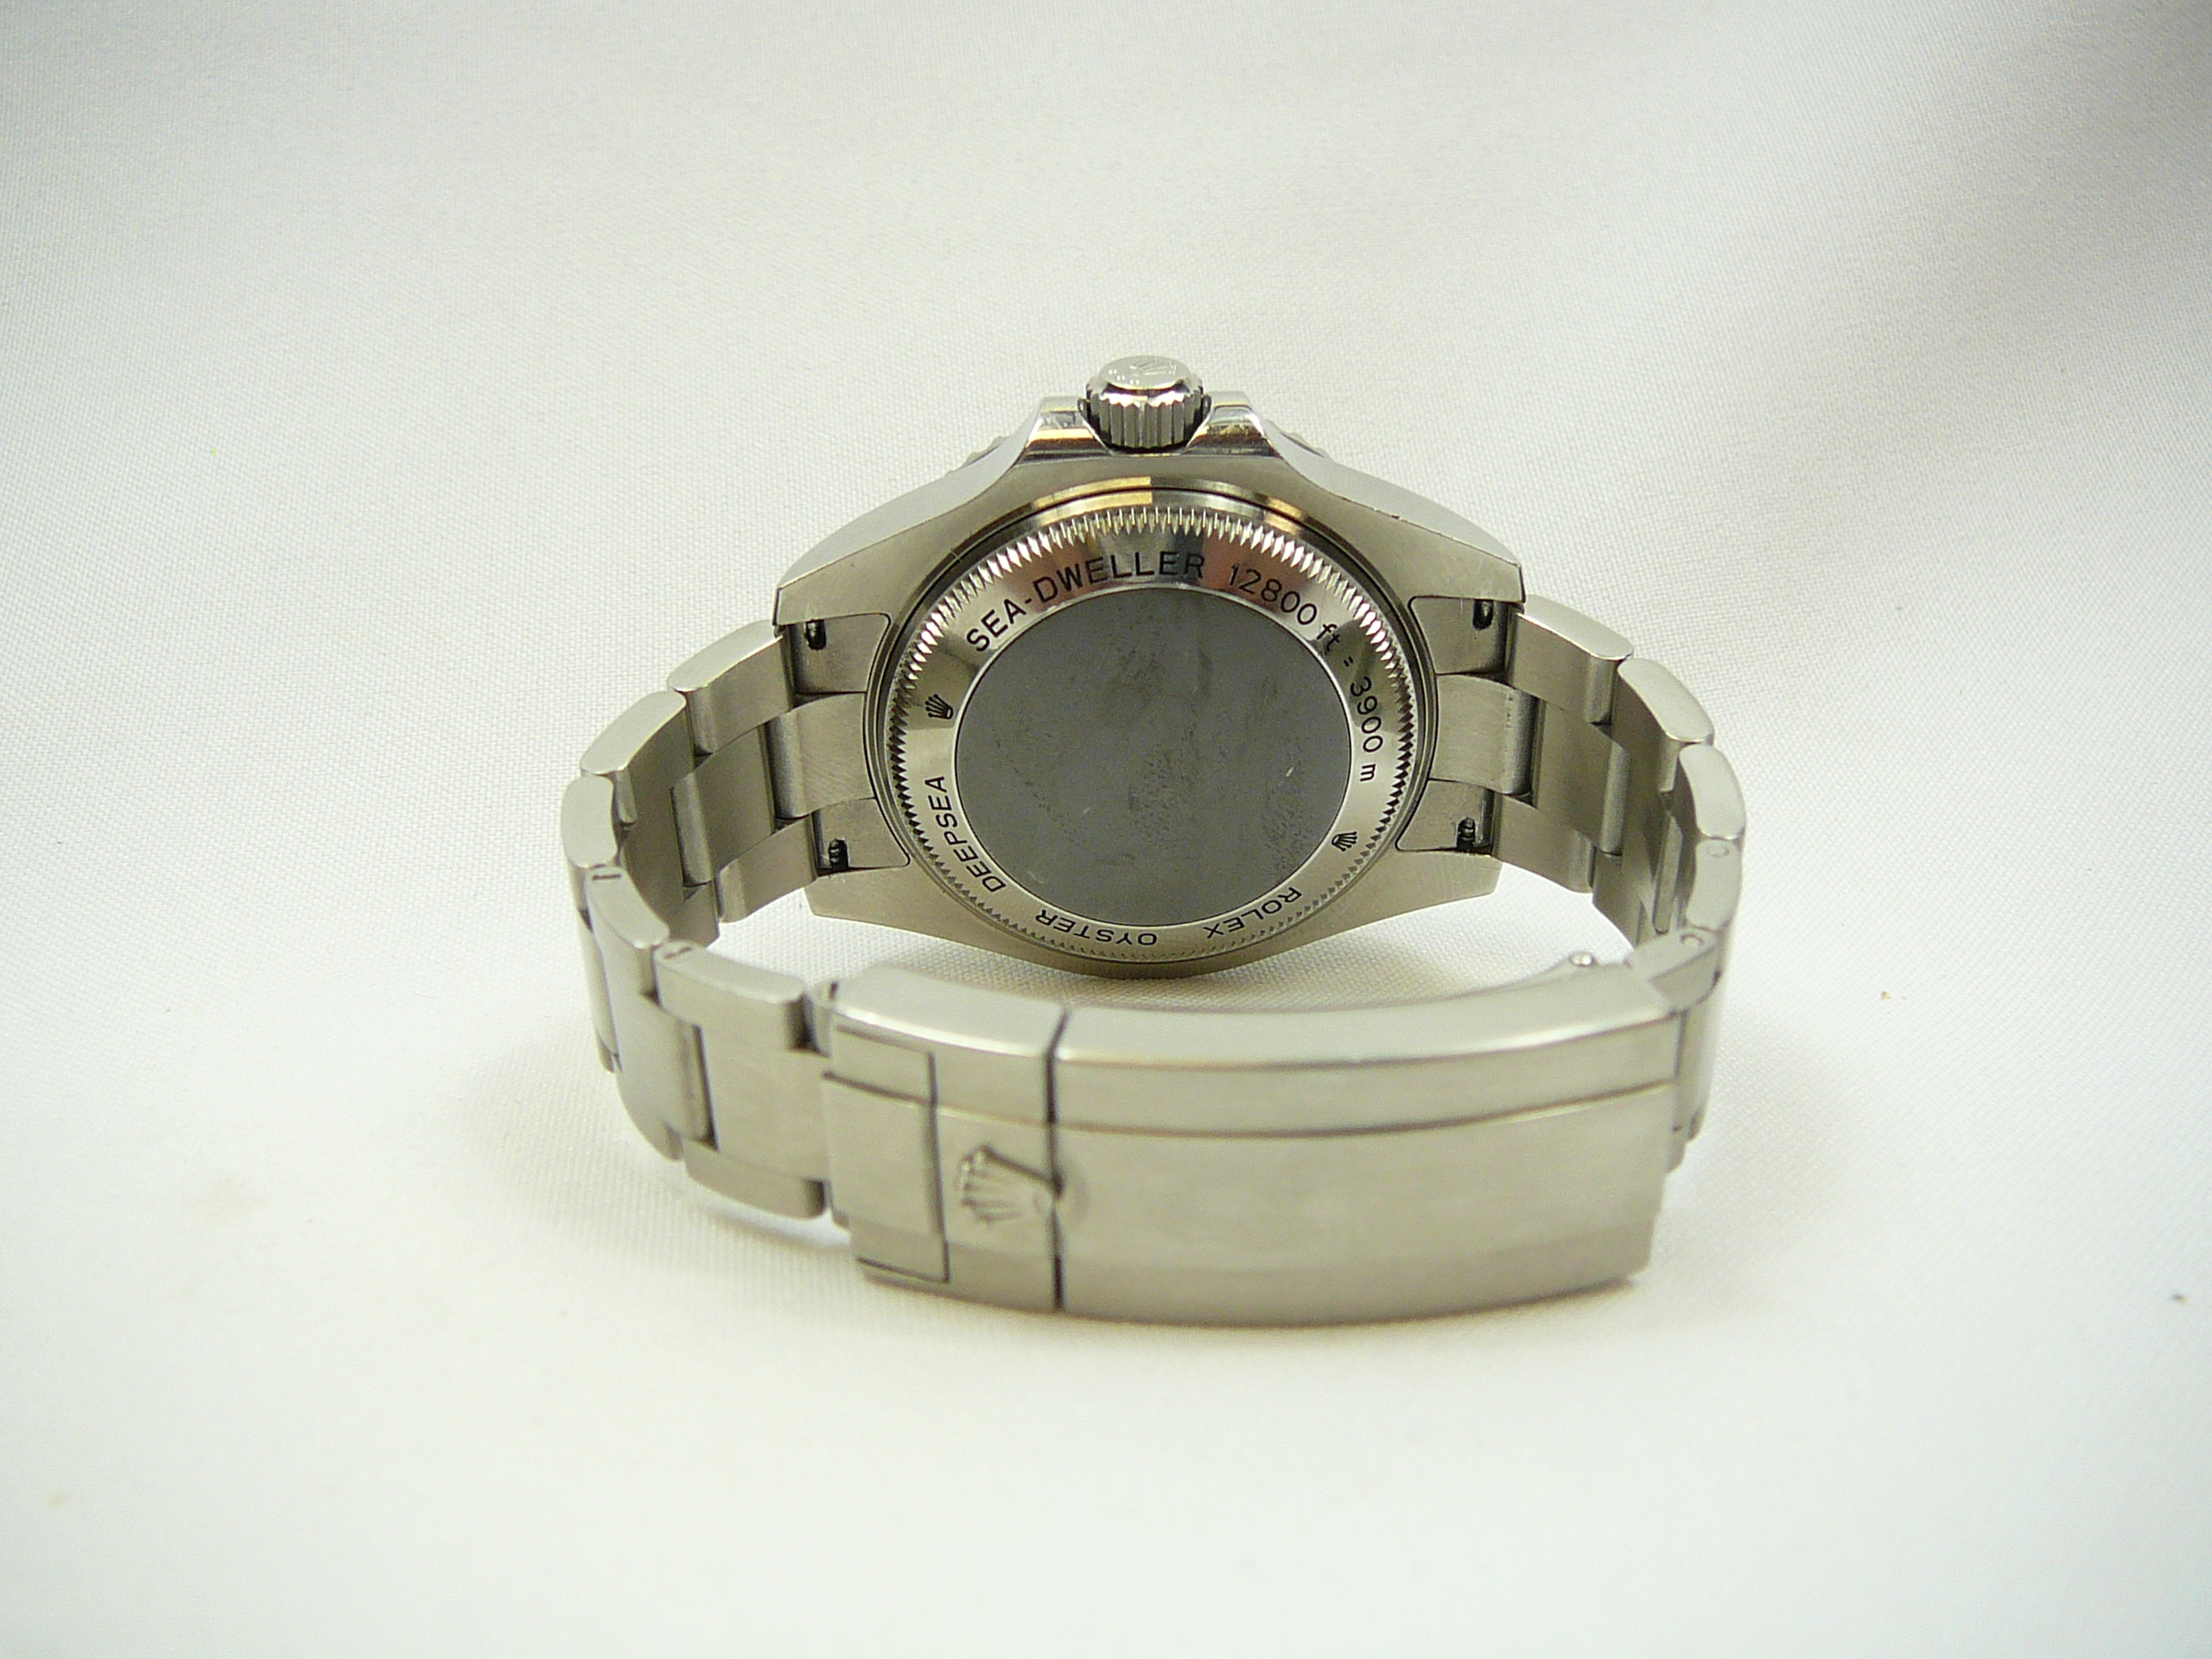 Gents Rolex Wrist Watch - Image 5 of 6